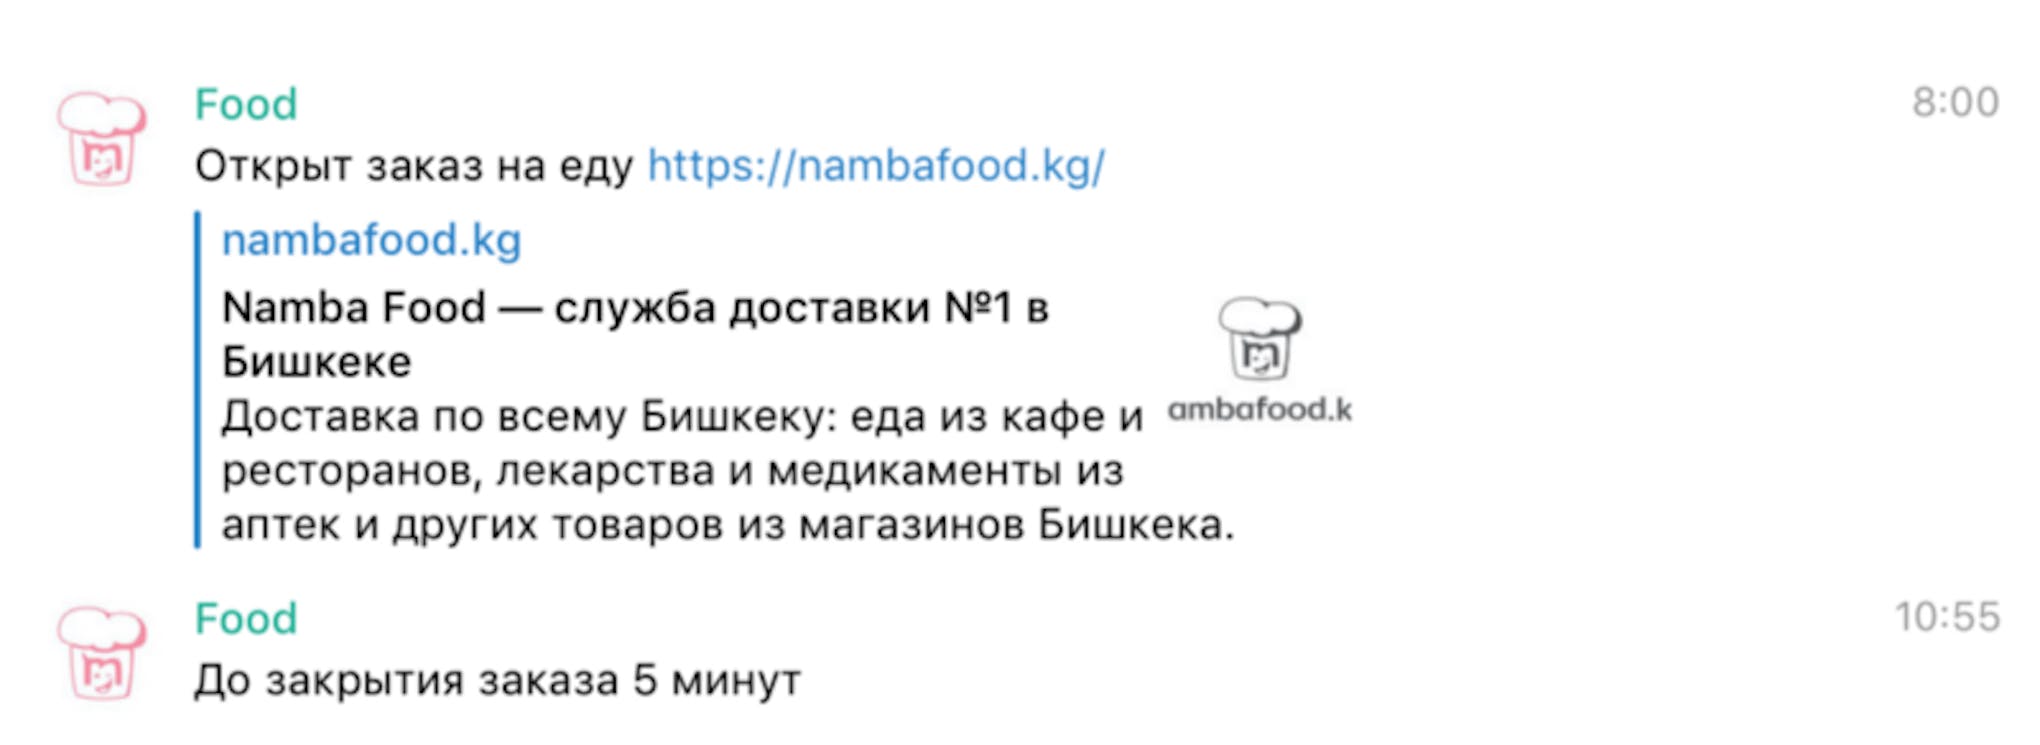 Namba Food Bot Notification for Slack.